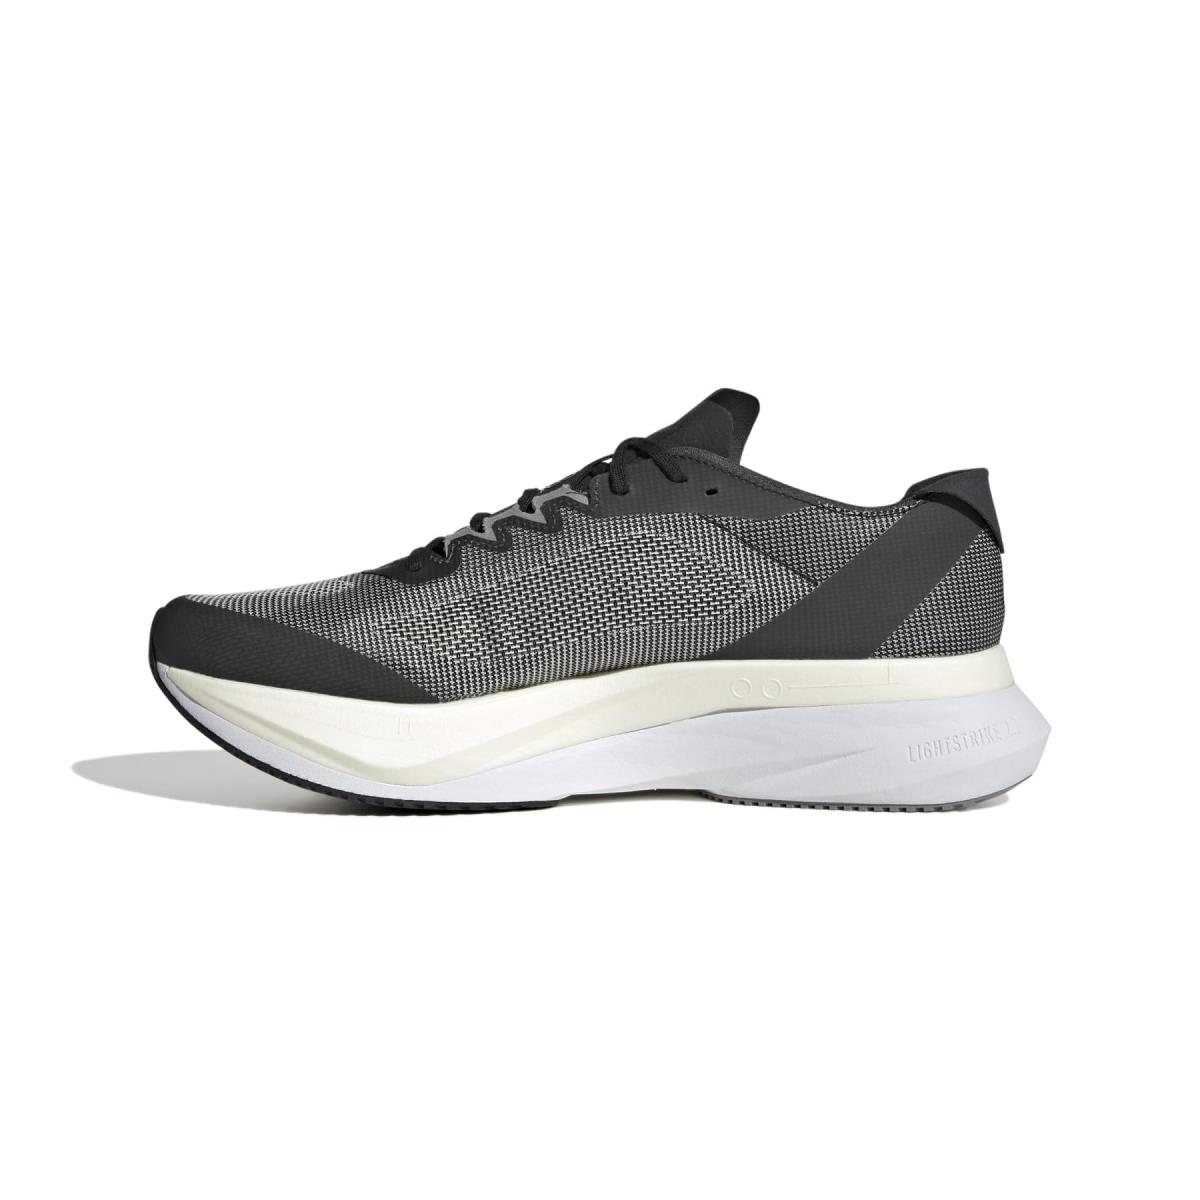 Adidas Unisex-adult Adizero Boston 12 Sneaker Black/White/Carbon